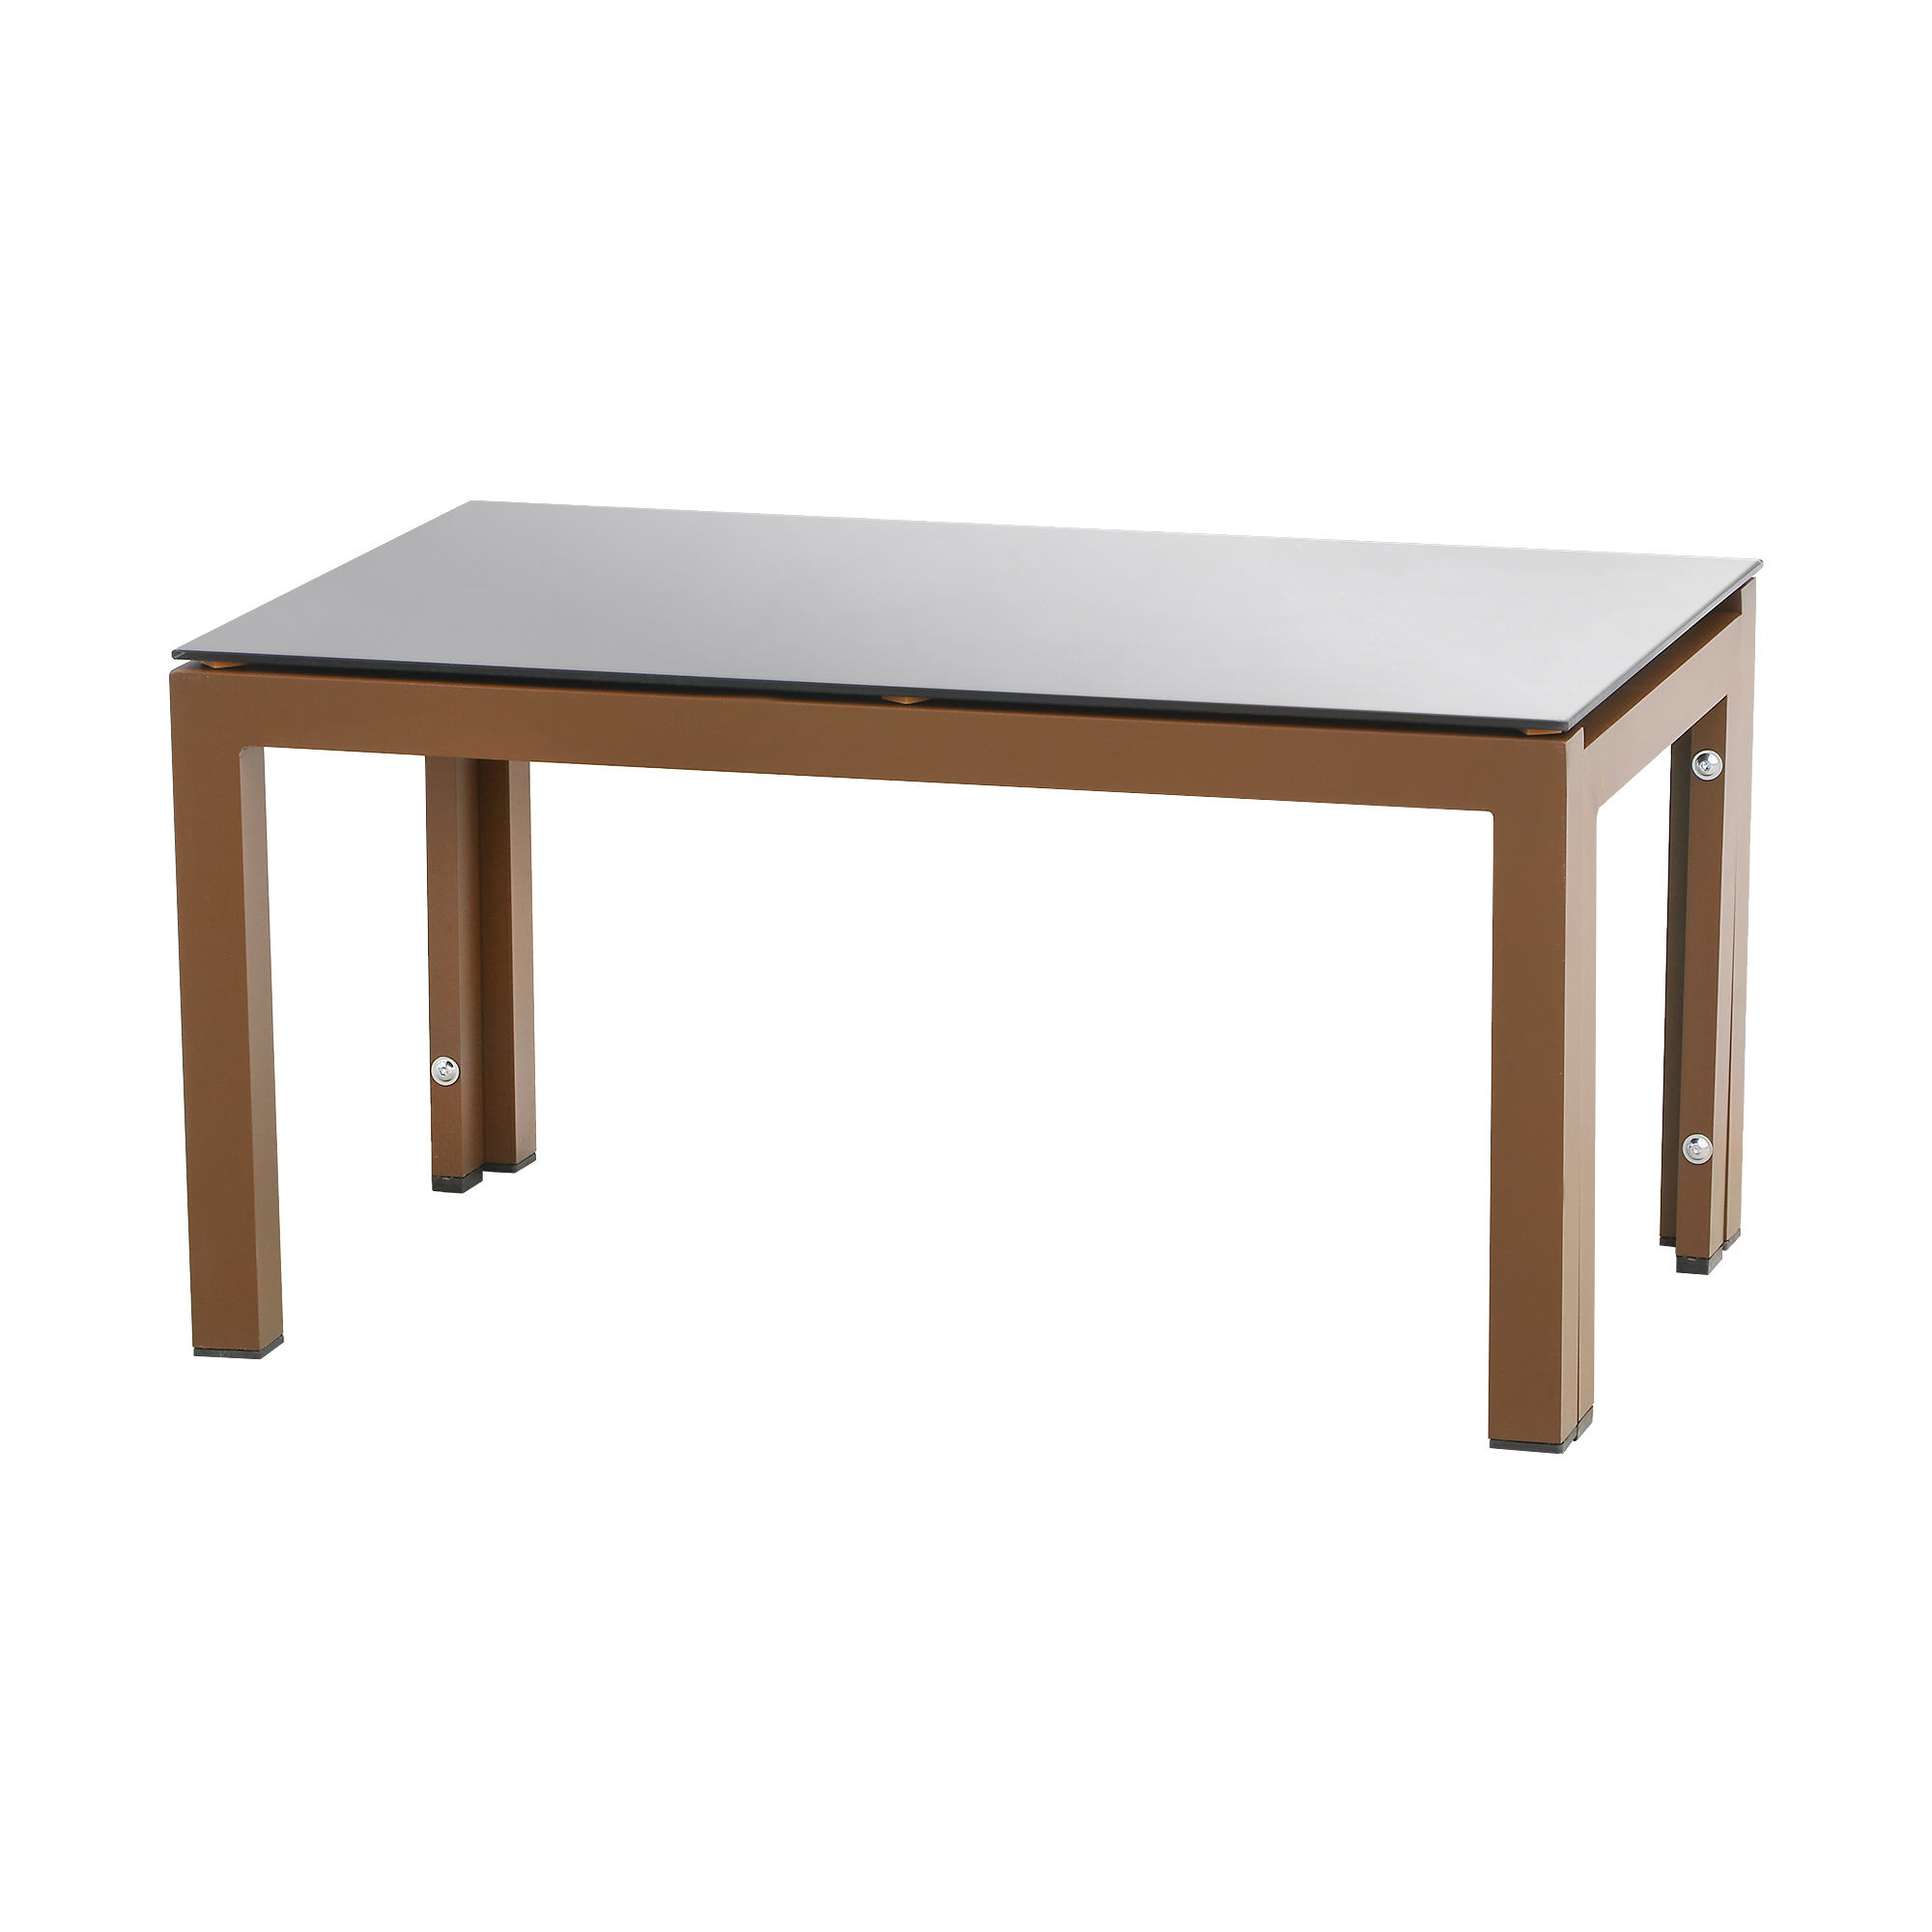 Комплект мебели Erinoz Daphne, цвет коричневый, размер 60x124x75 см - фото 4